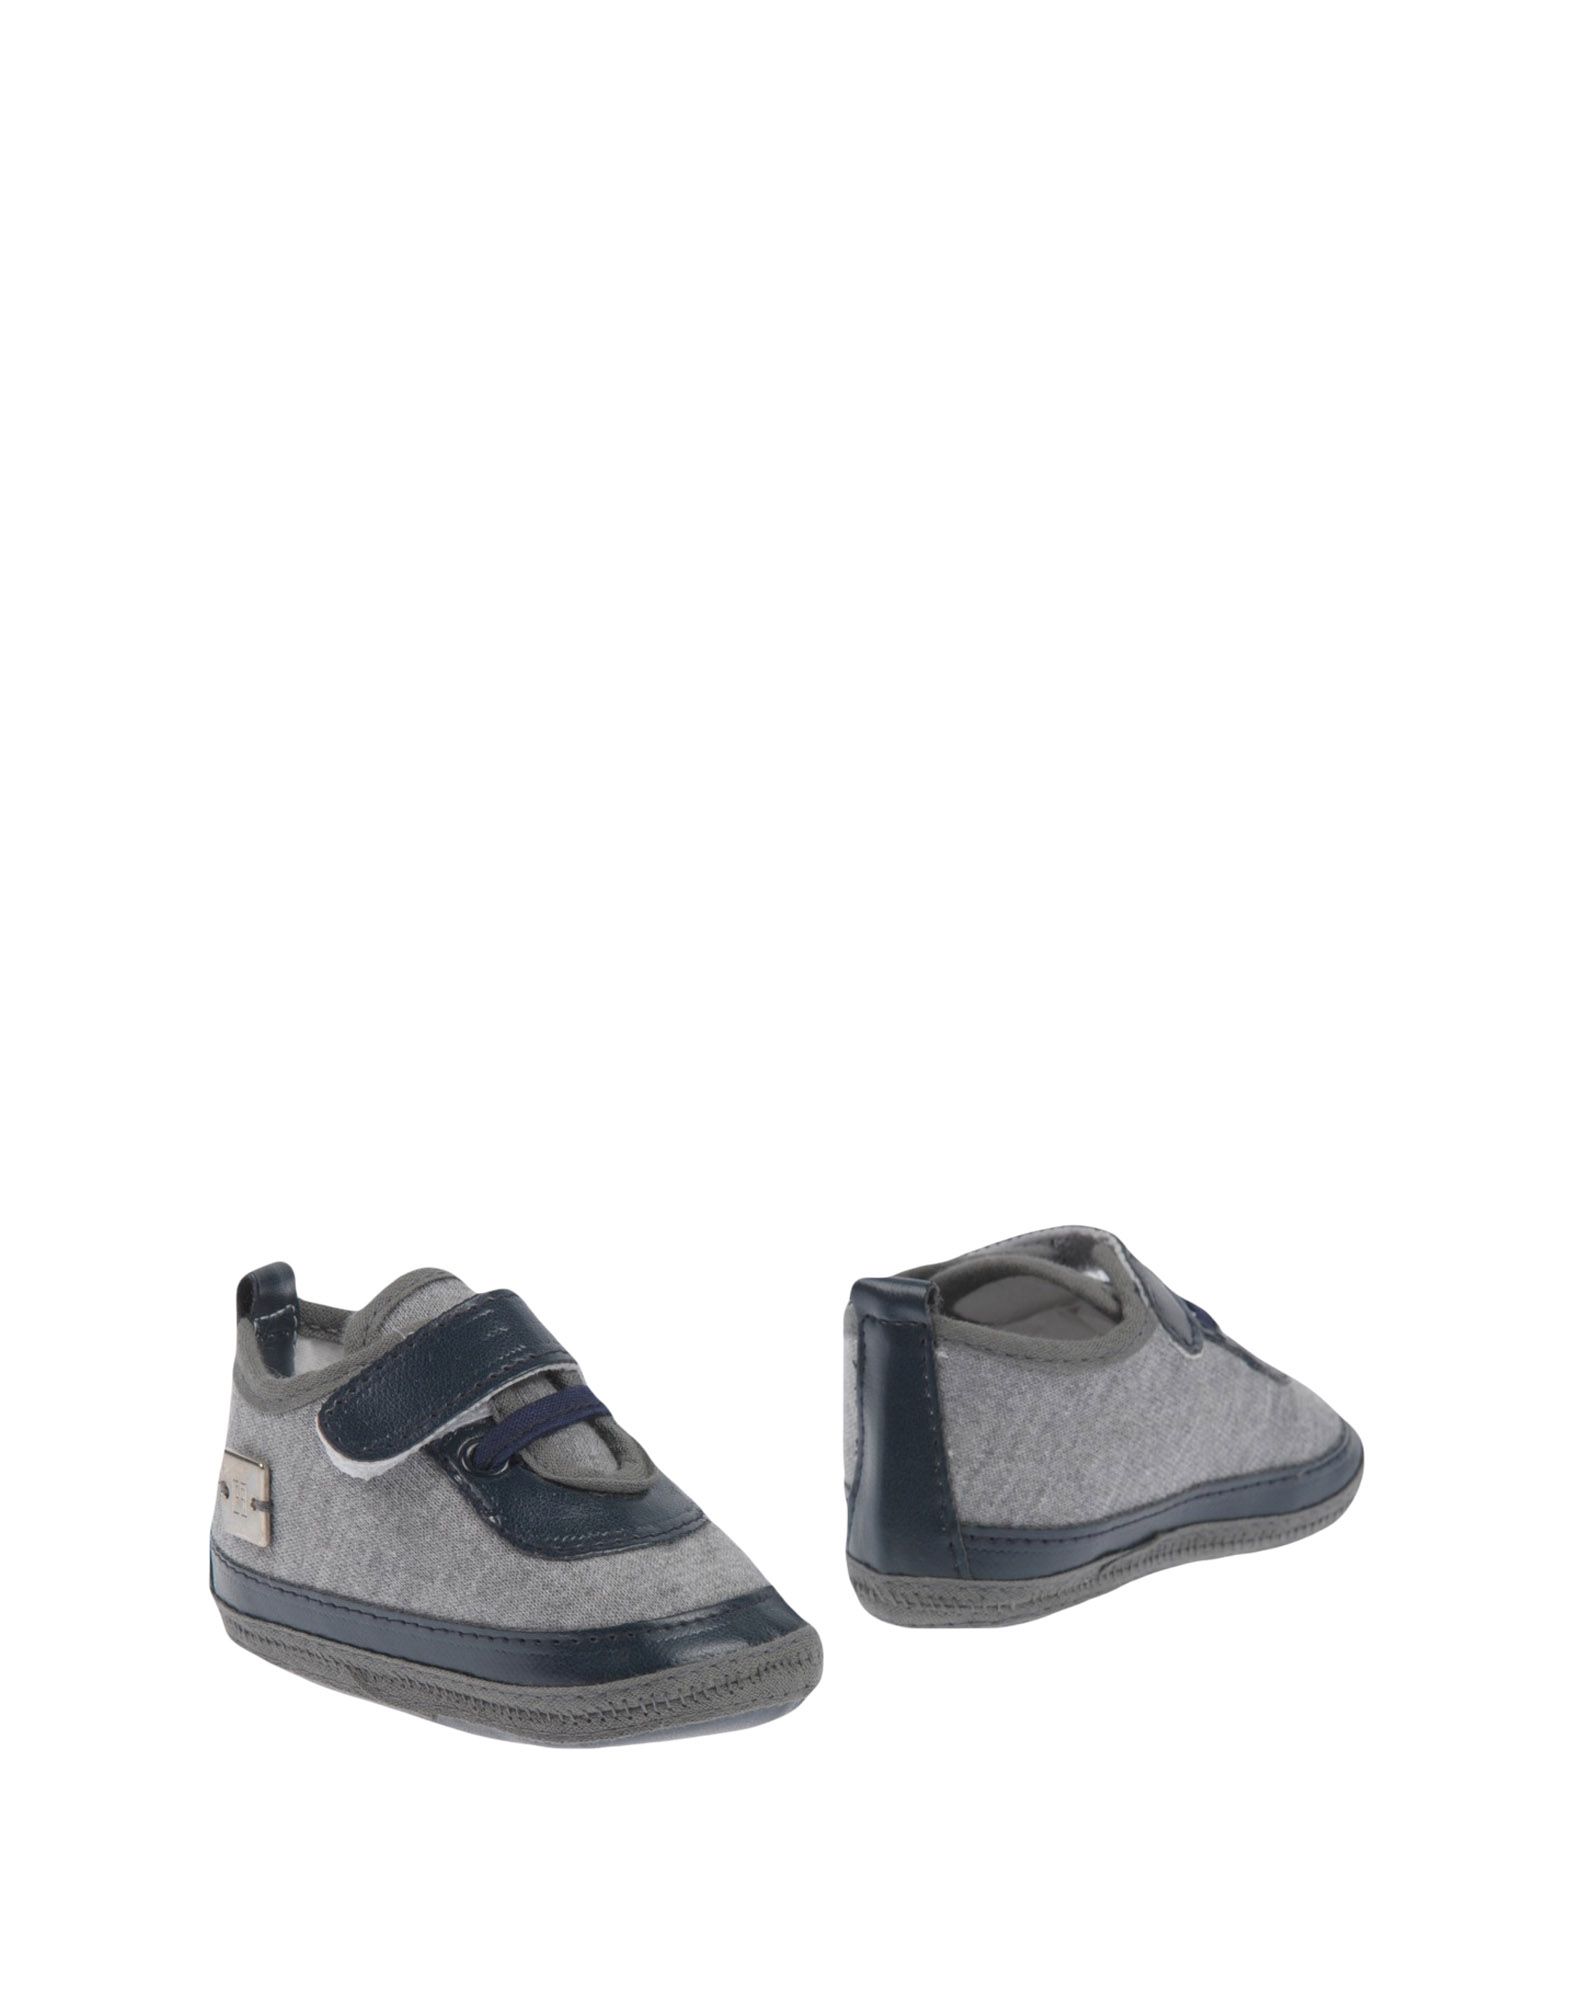 Carlo Pignatelli Kids' Newborn Shoes In Grey